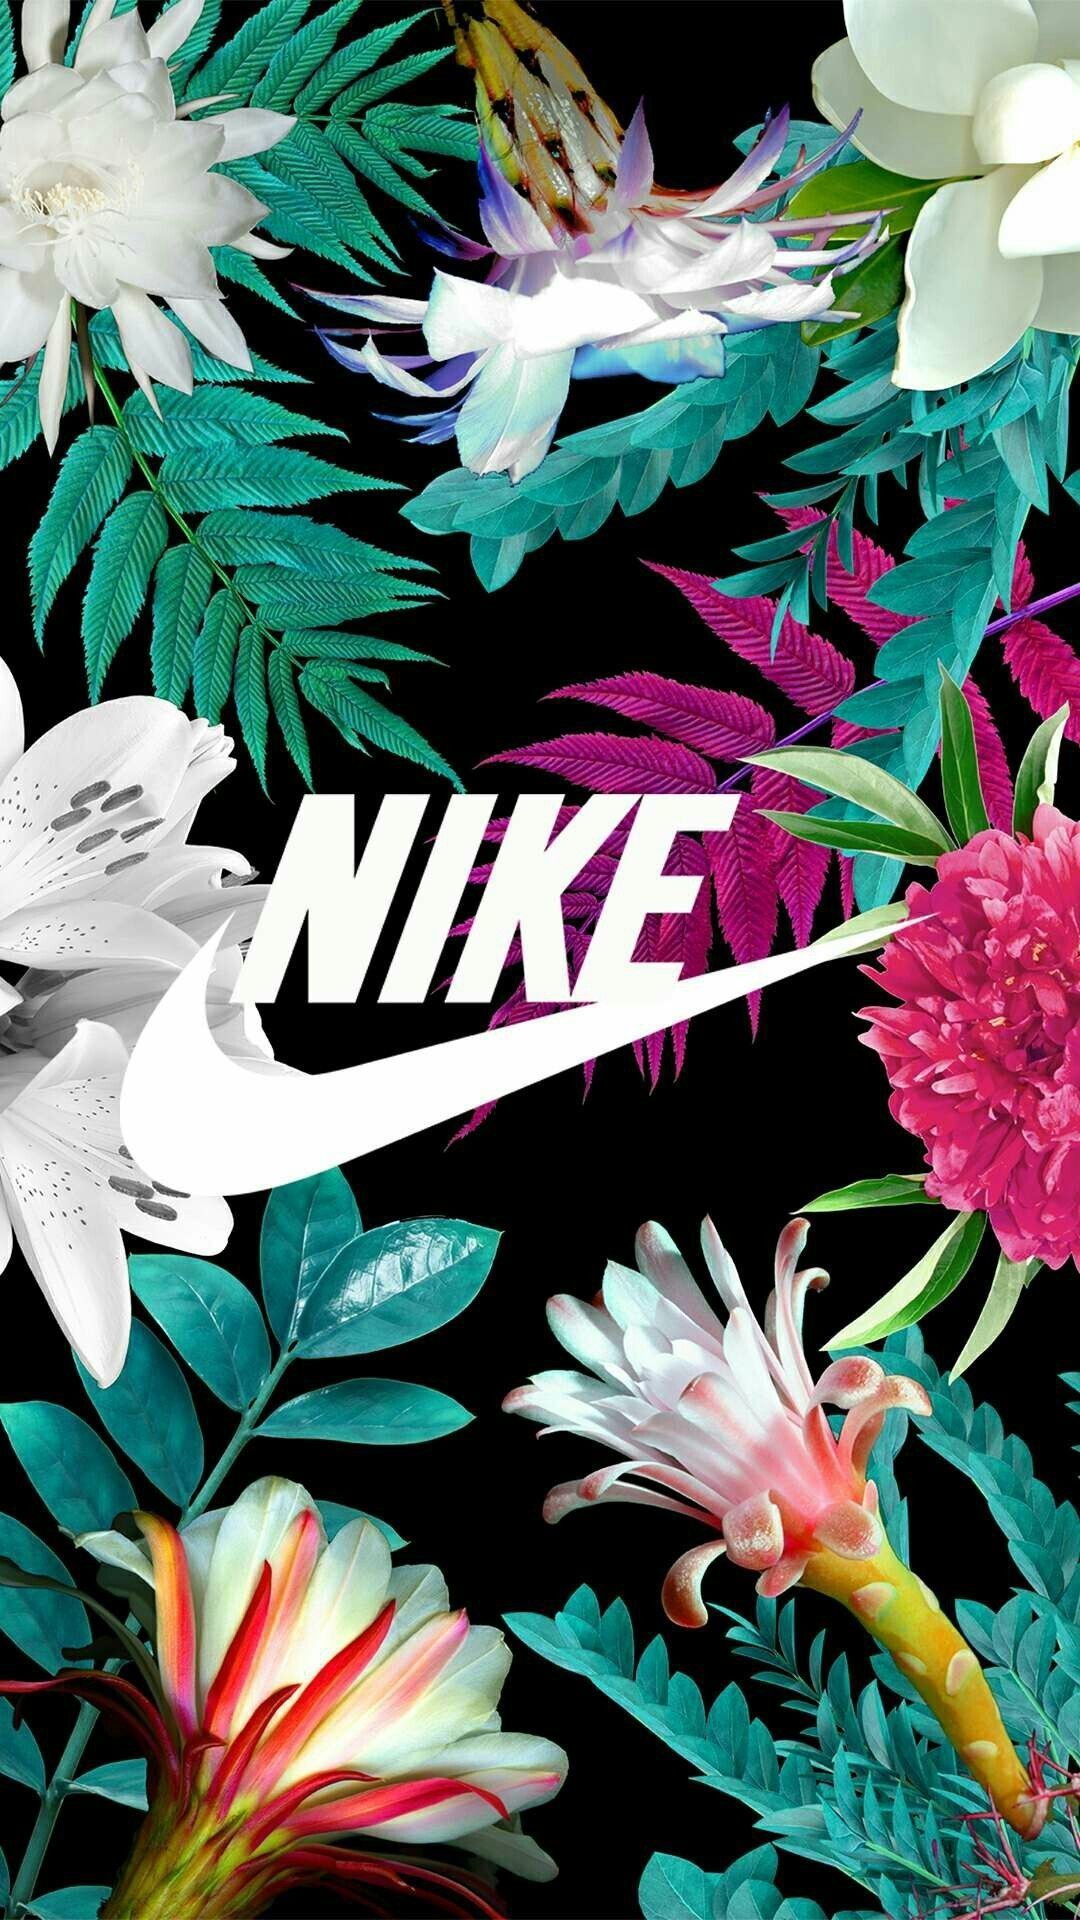 Hình nền Nike cho cô gái - Với một màu sắc nữ tính và trẻ trung, hình nền Nike này sẽ làm cô gái tỏa sáng và tăng thêm phần quyến rũ, khiến bạn tự tin khi sử dụng điện thoại.